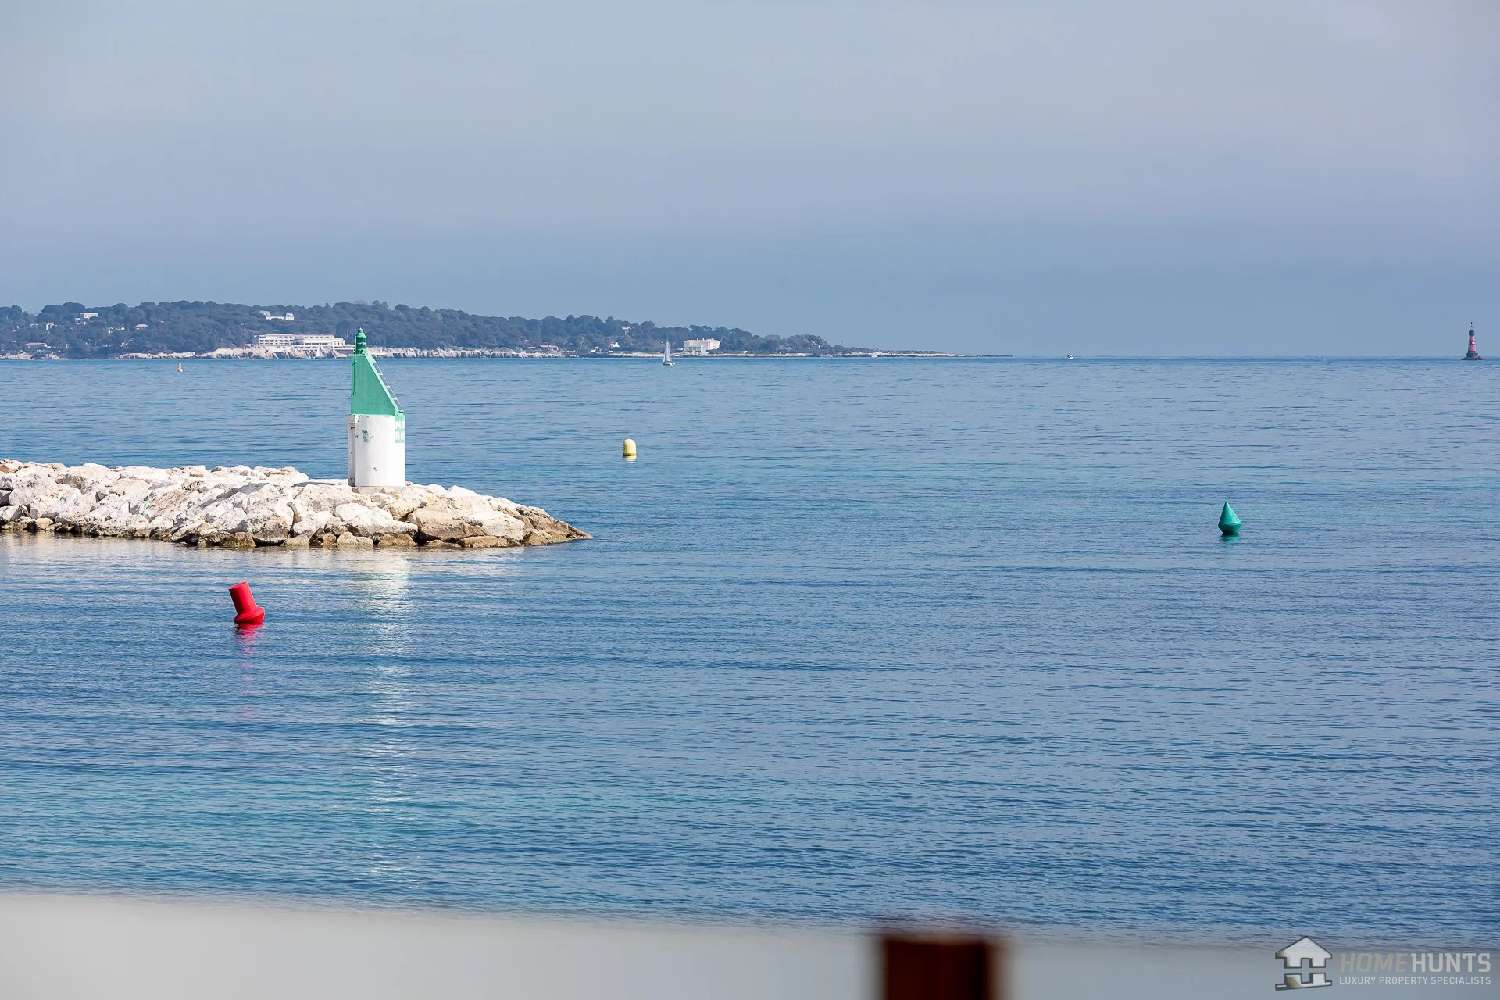  for sale villa Cannes Alpes-Maritimes 2